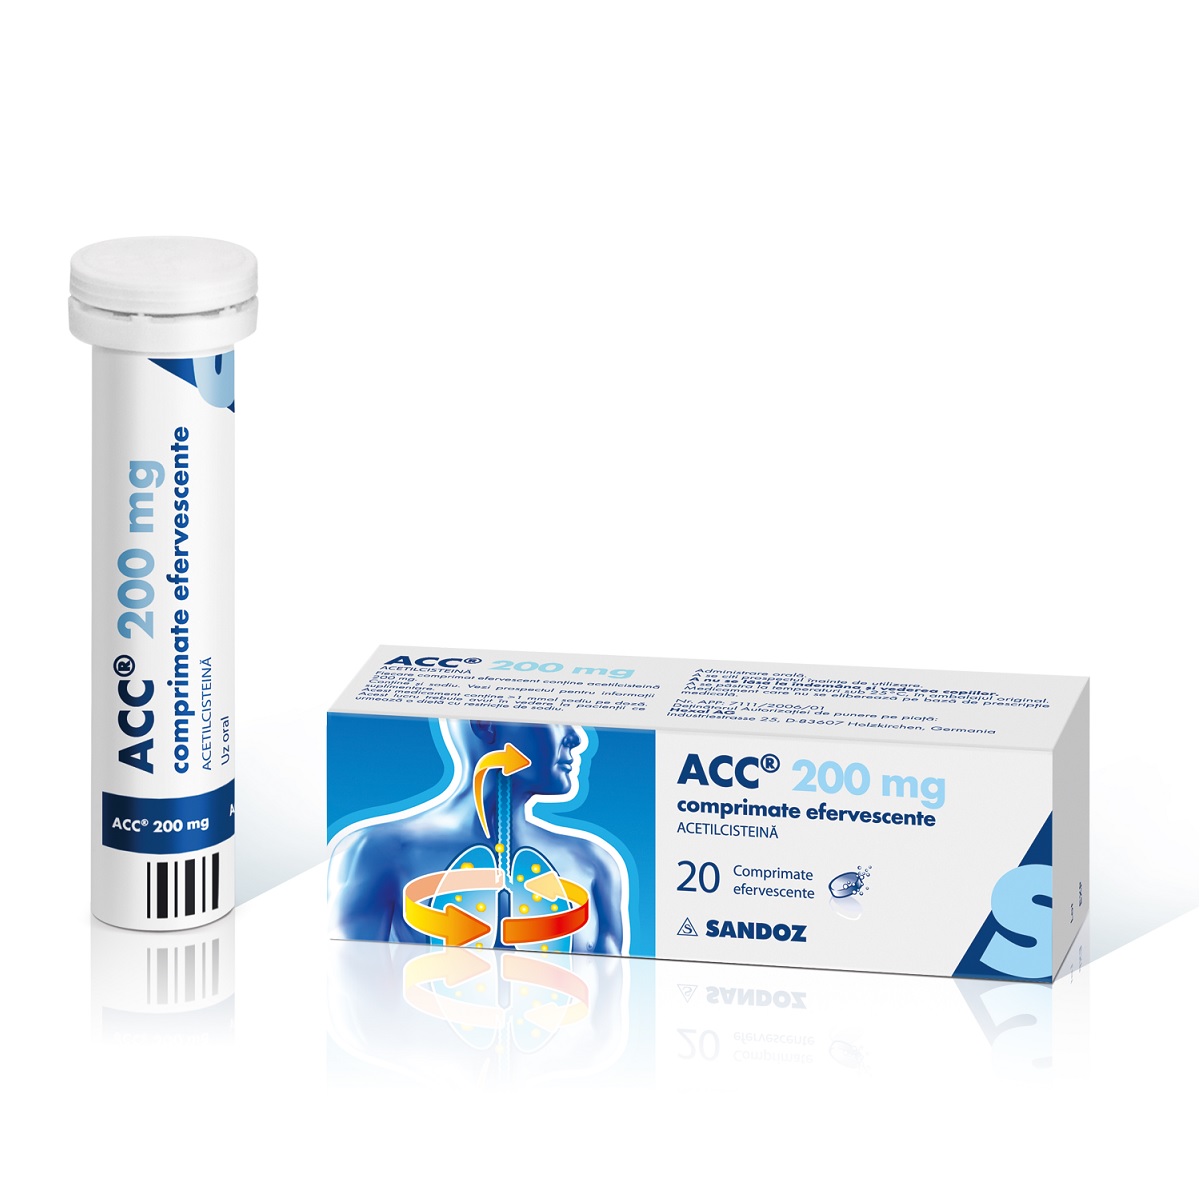 OTC (medicamente care se eliberează fără prescripție medicală) - Acc 200mg x 20 comprimate efervecente, epastila.ro